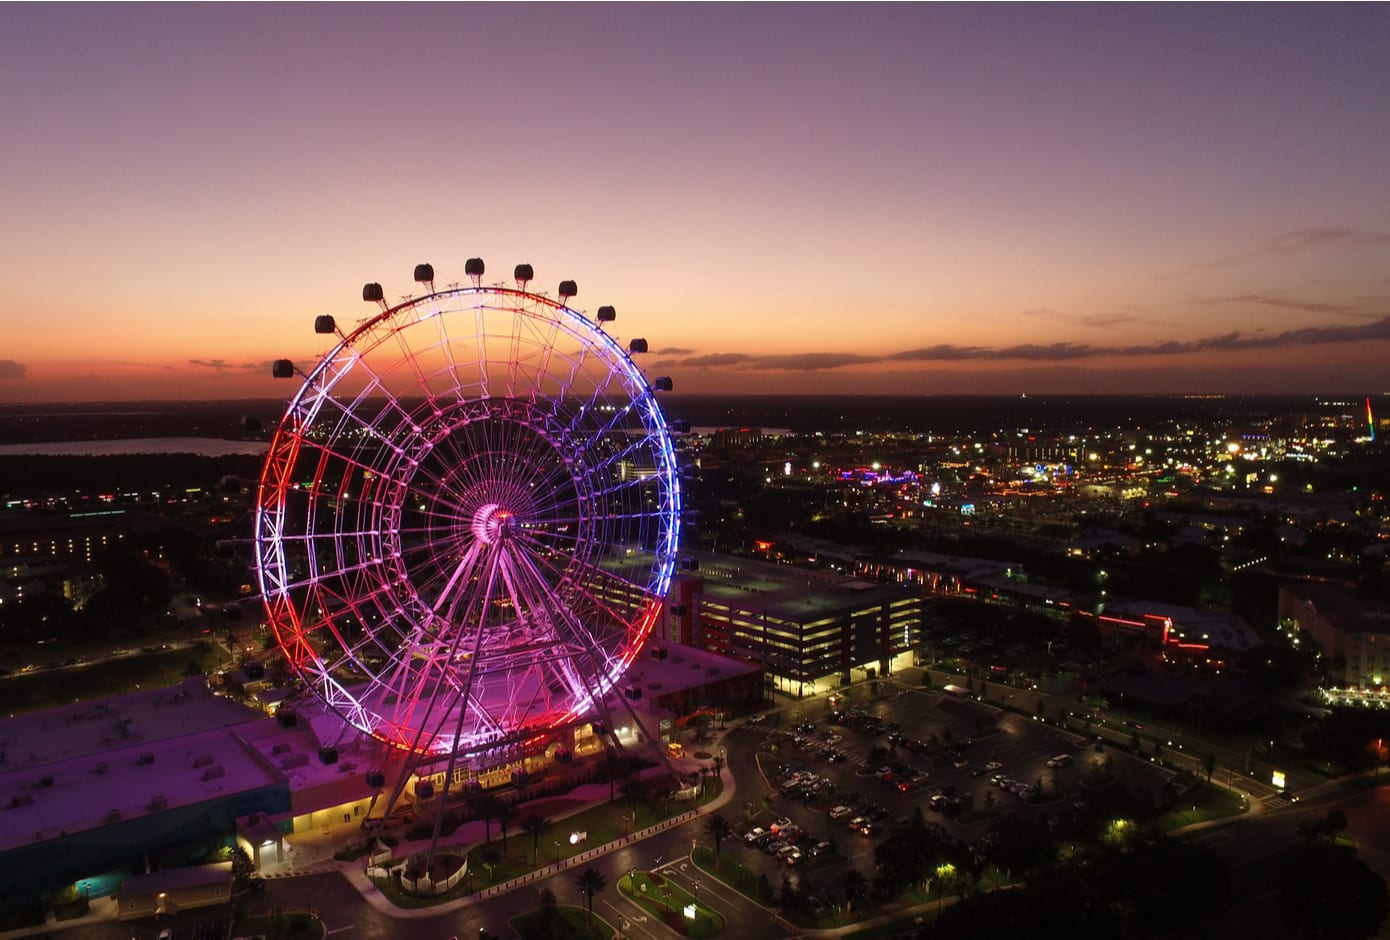 Giant Wheel at Icon Park, Orlando